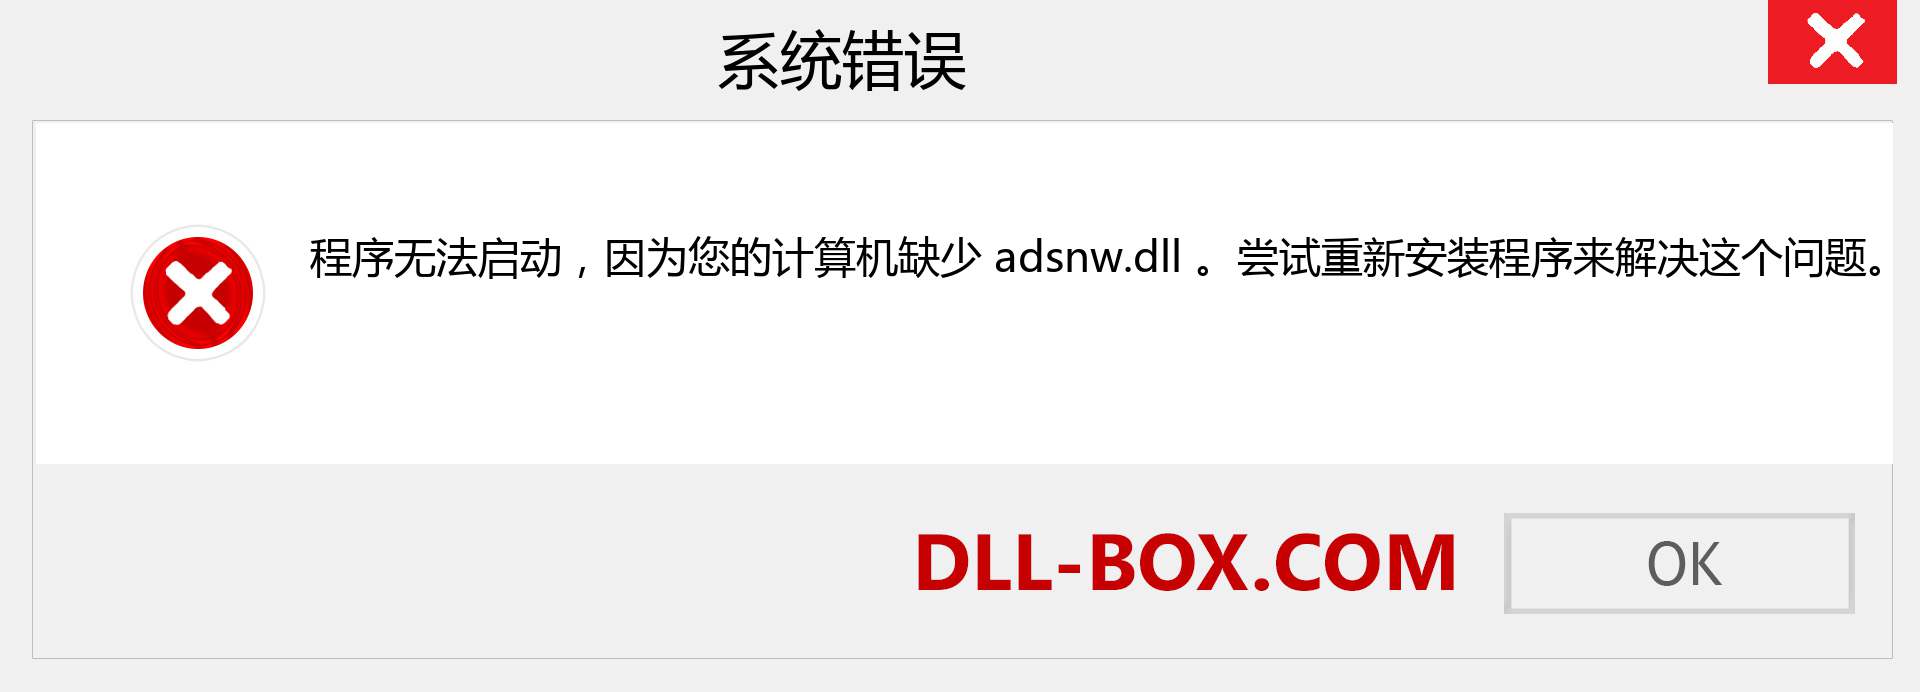 adsnw.dll 文件丢失？。 适用于 Windows 7、8、10 的下载 - 修复 Windows、照片、图像上的 adsnw dll 丢失错误